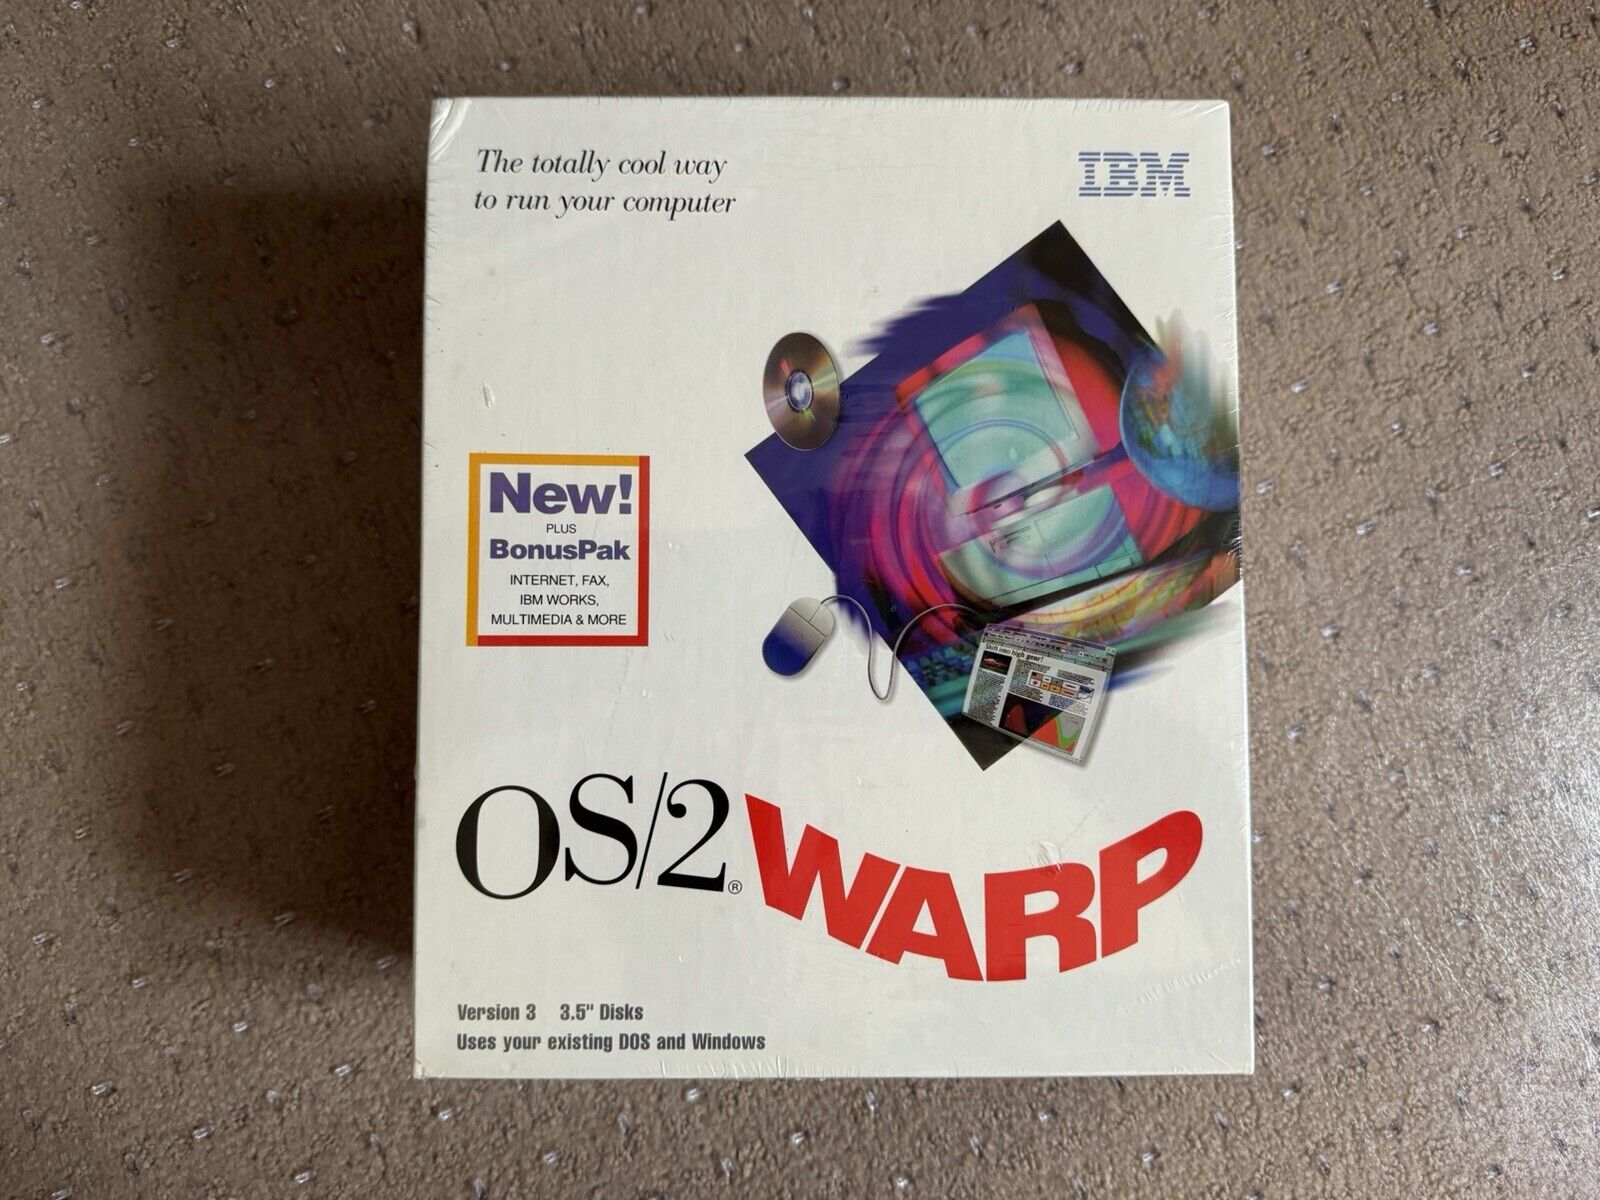 Vintage IBM OS/2 Warp Version 3 in Box with Bonus Pak - Factory Sealed